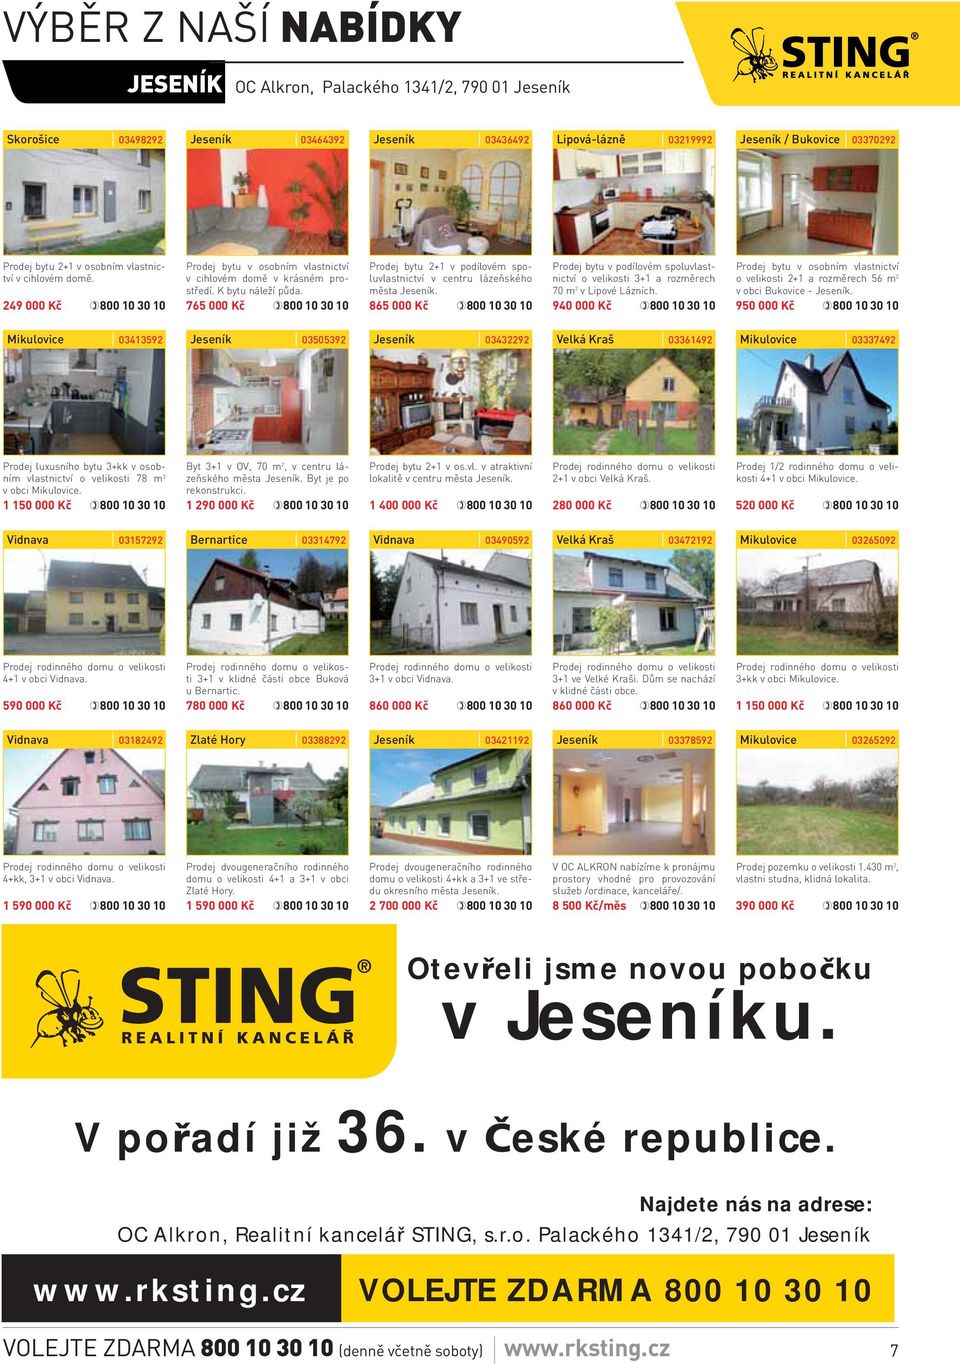 765 000 Kč Prodej bytu 2+1 v podílovém spoluvlastnictví v centru lázeňského města Jeseník. 865 000 Kč Prodej bytu v podílovém spoluvlastnictví o velikosti 3+1 a rozměrech 70 m 2 v Lipové Lázních.